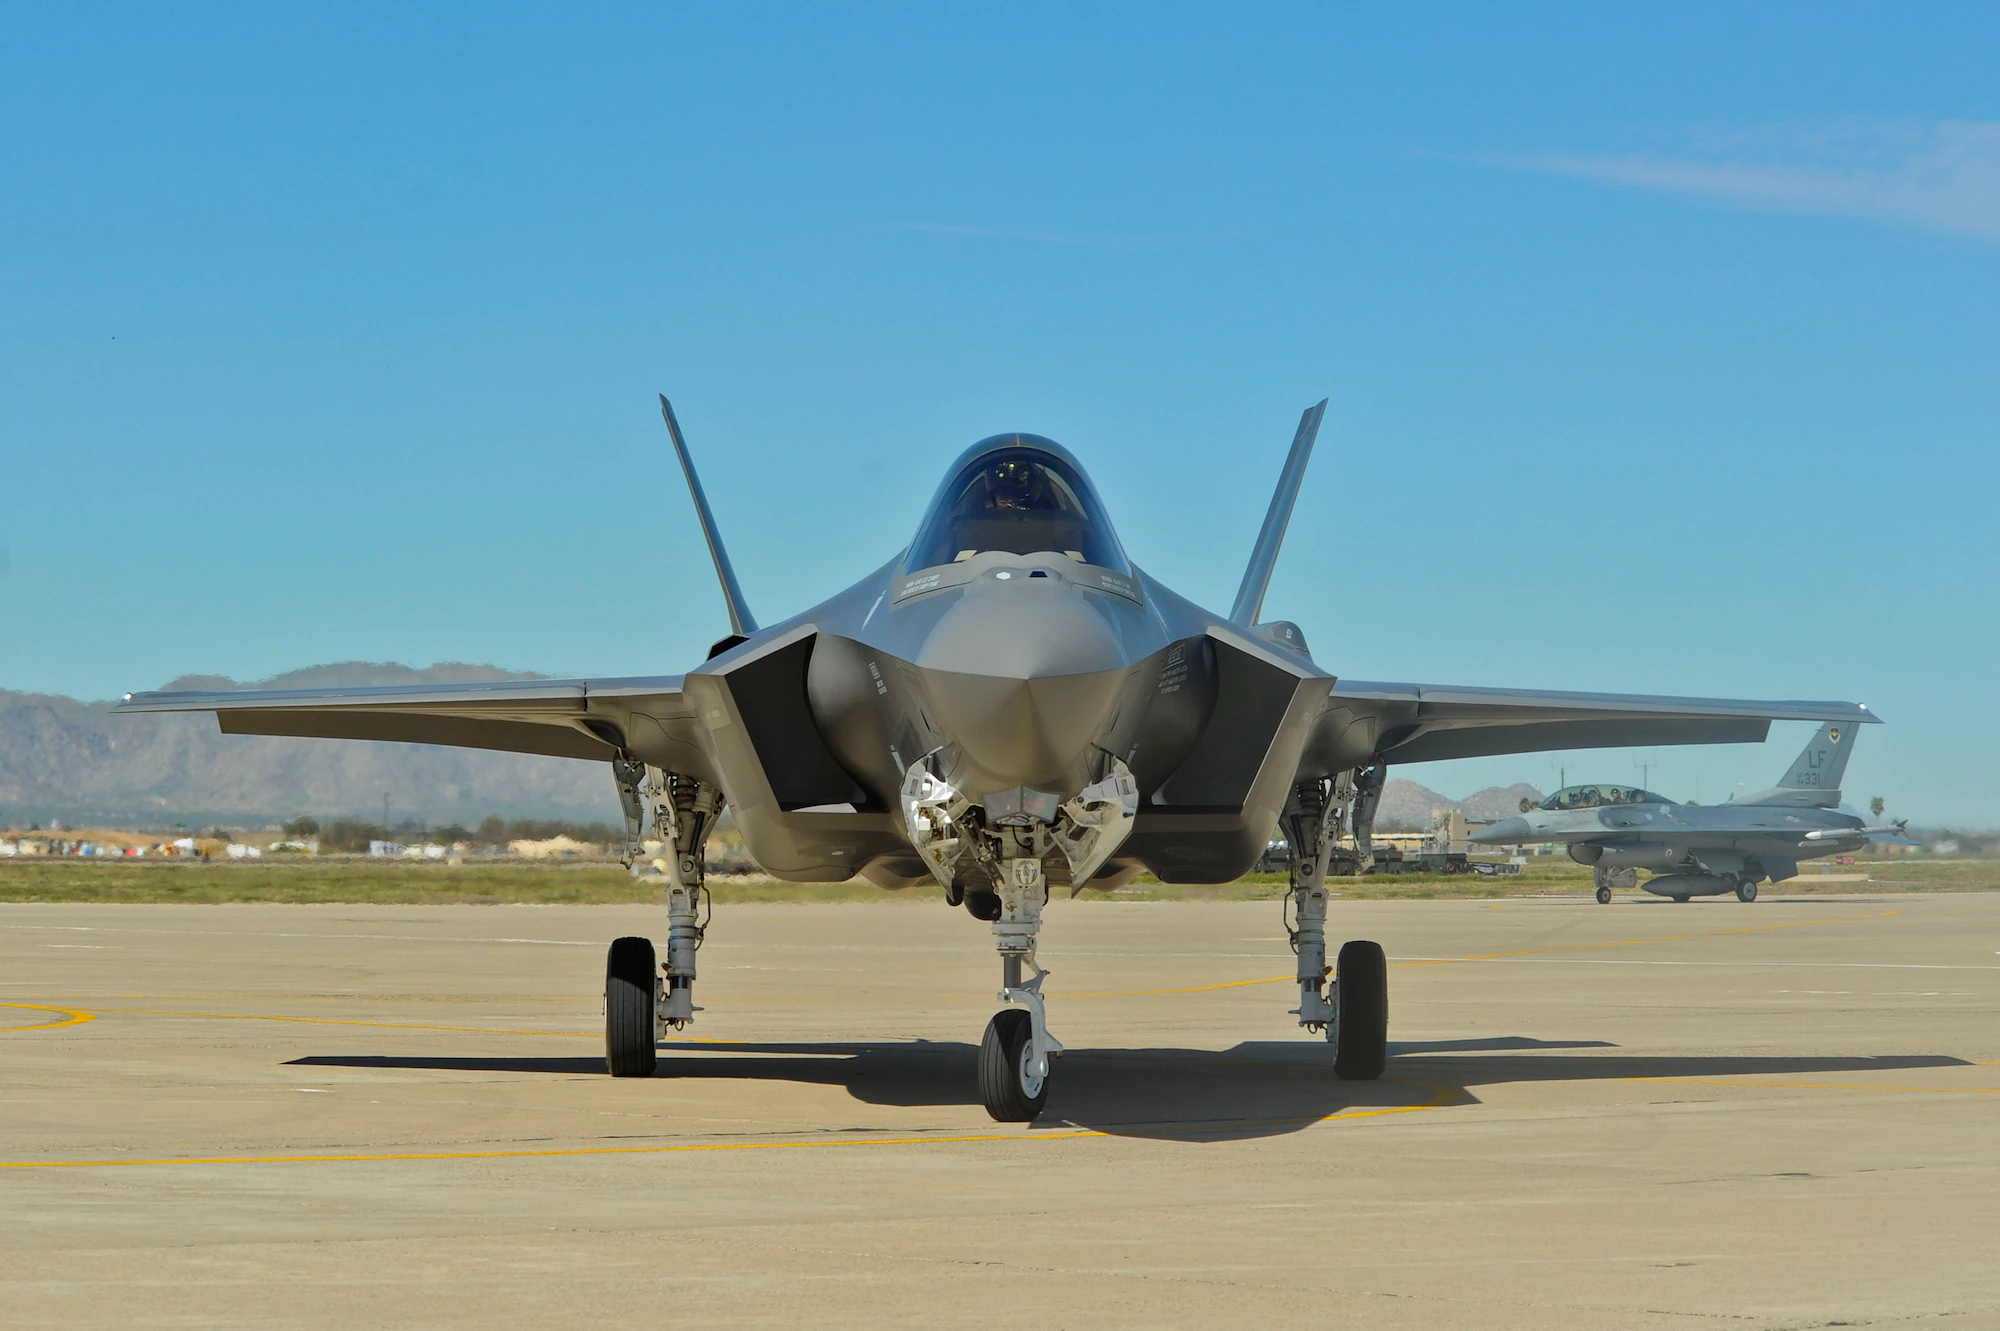 General Electric beginnt mit der Entwicklung einer Serienversion des adaptiven Triebwerks XA100 für das Kampfflugzeug F-35